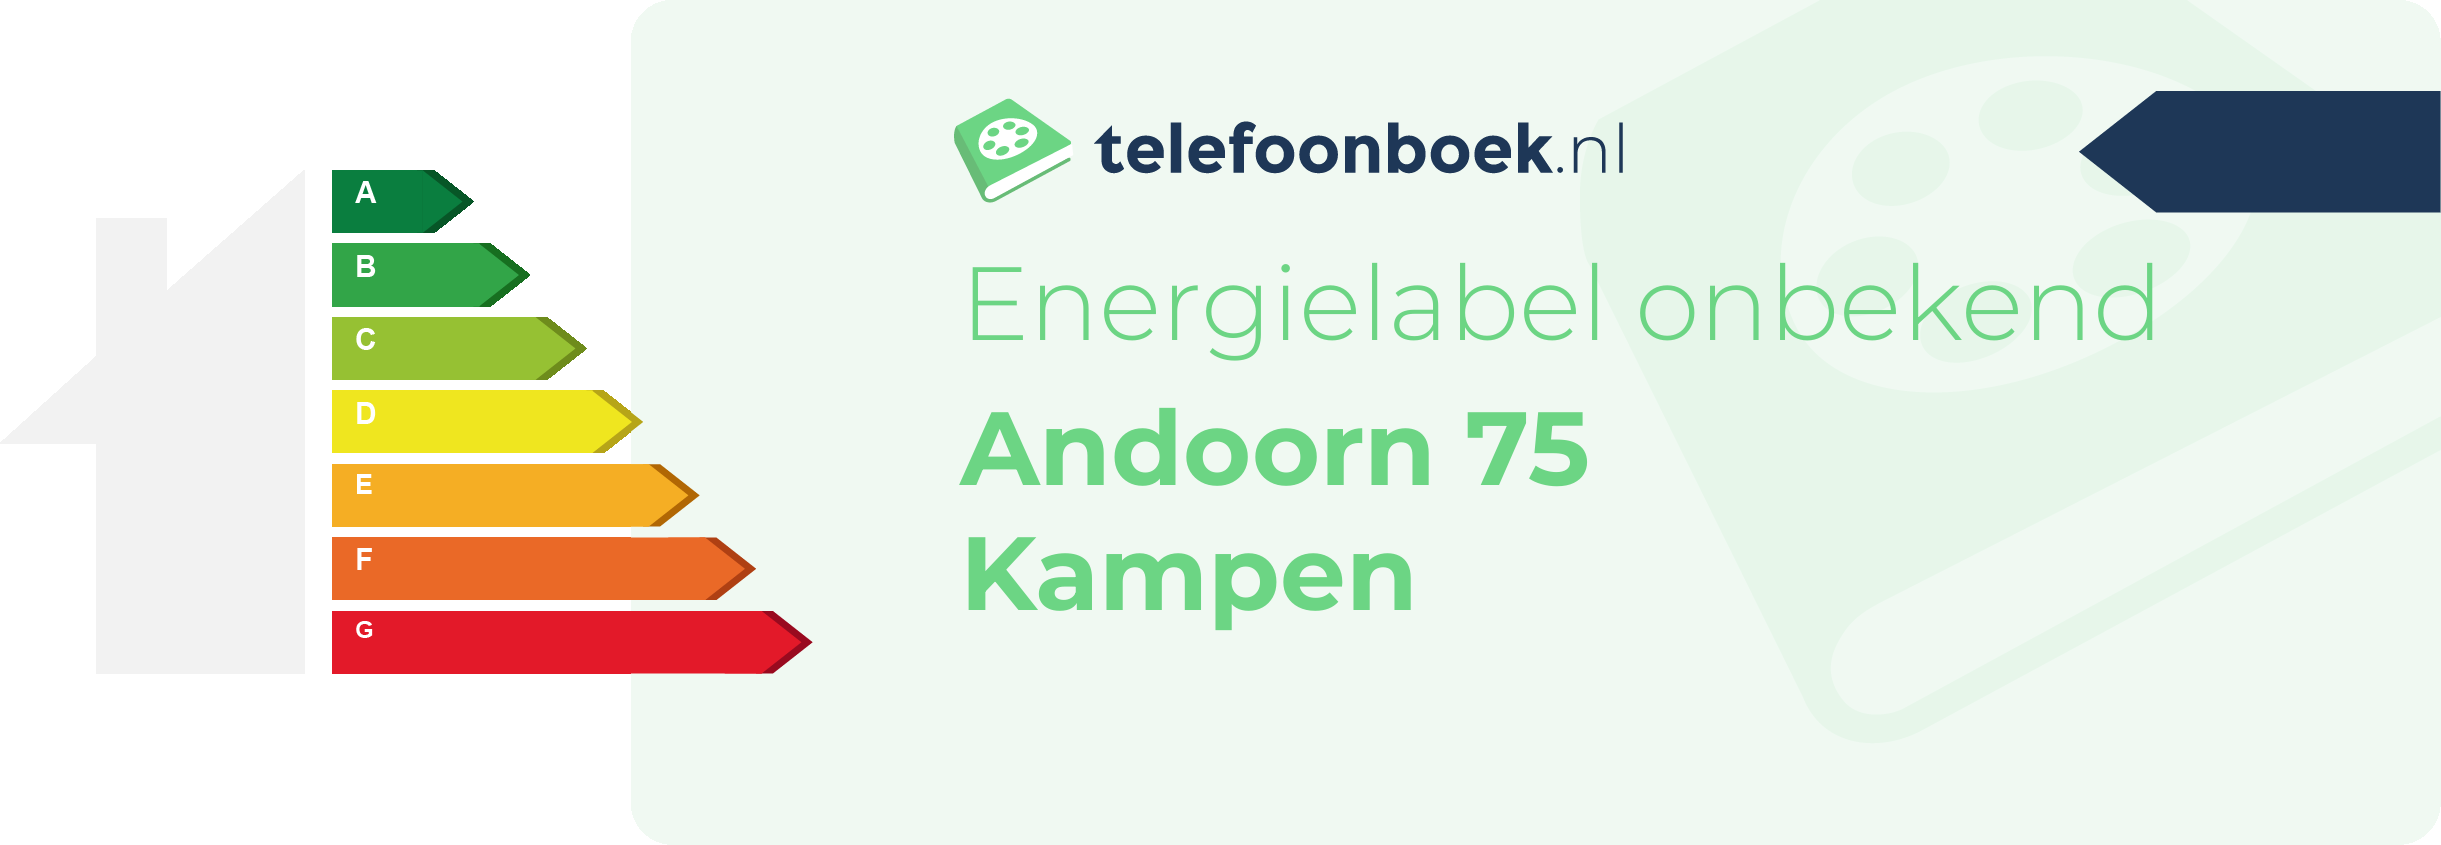 Energielabel Andoorn 75 Kampen